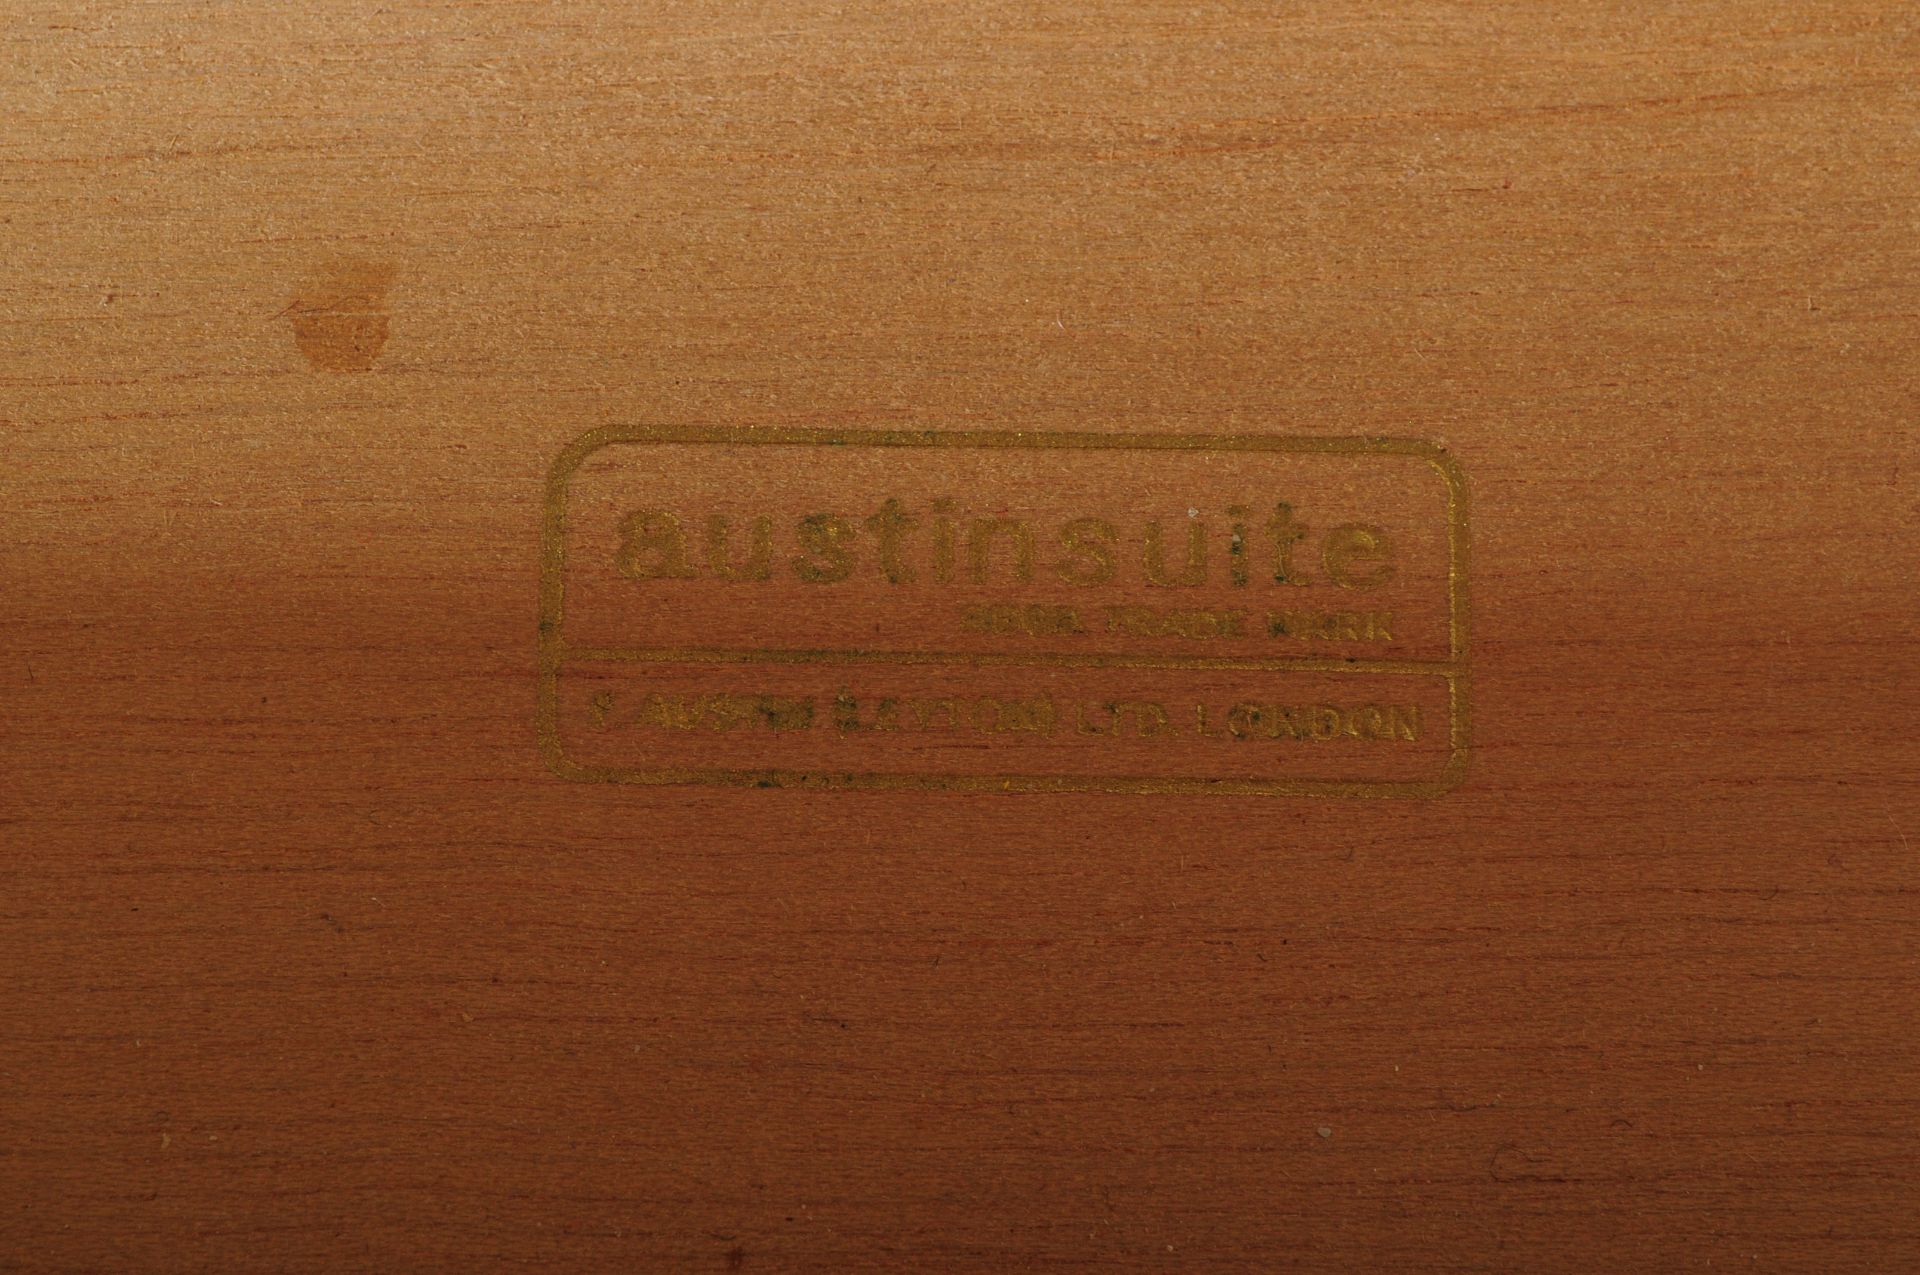 AUSTINSUITE PEDESTAL CHEST & LOW DRESSING TABLE UNIT - Image 6 of 6